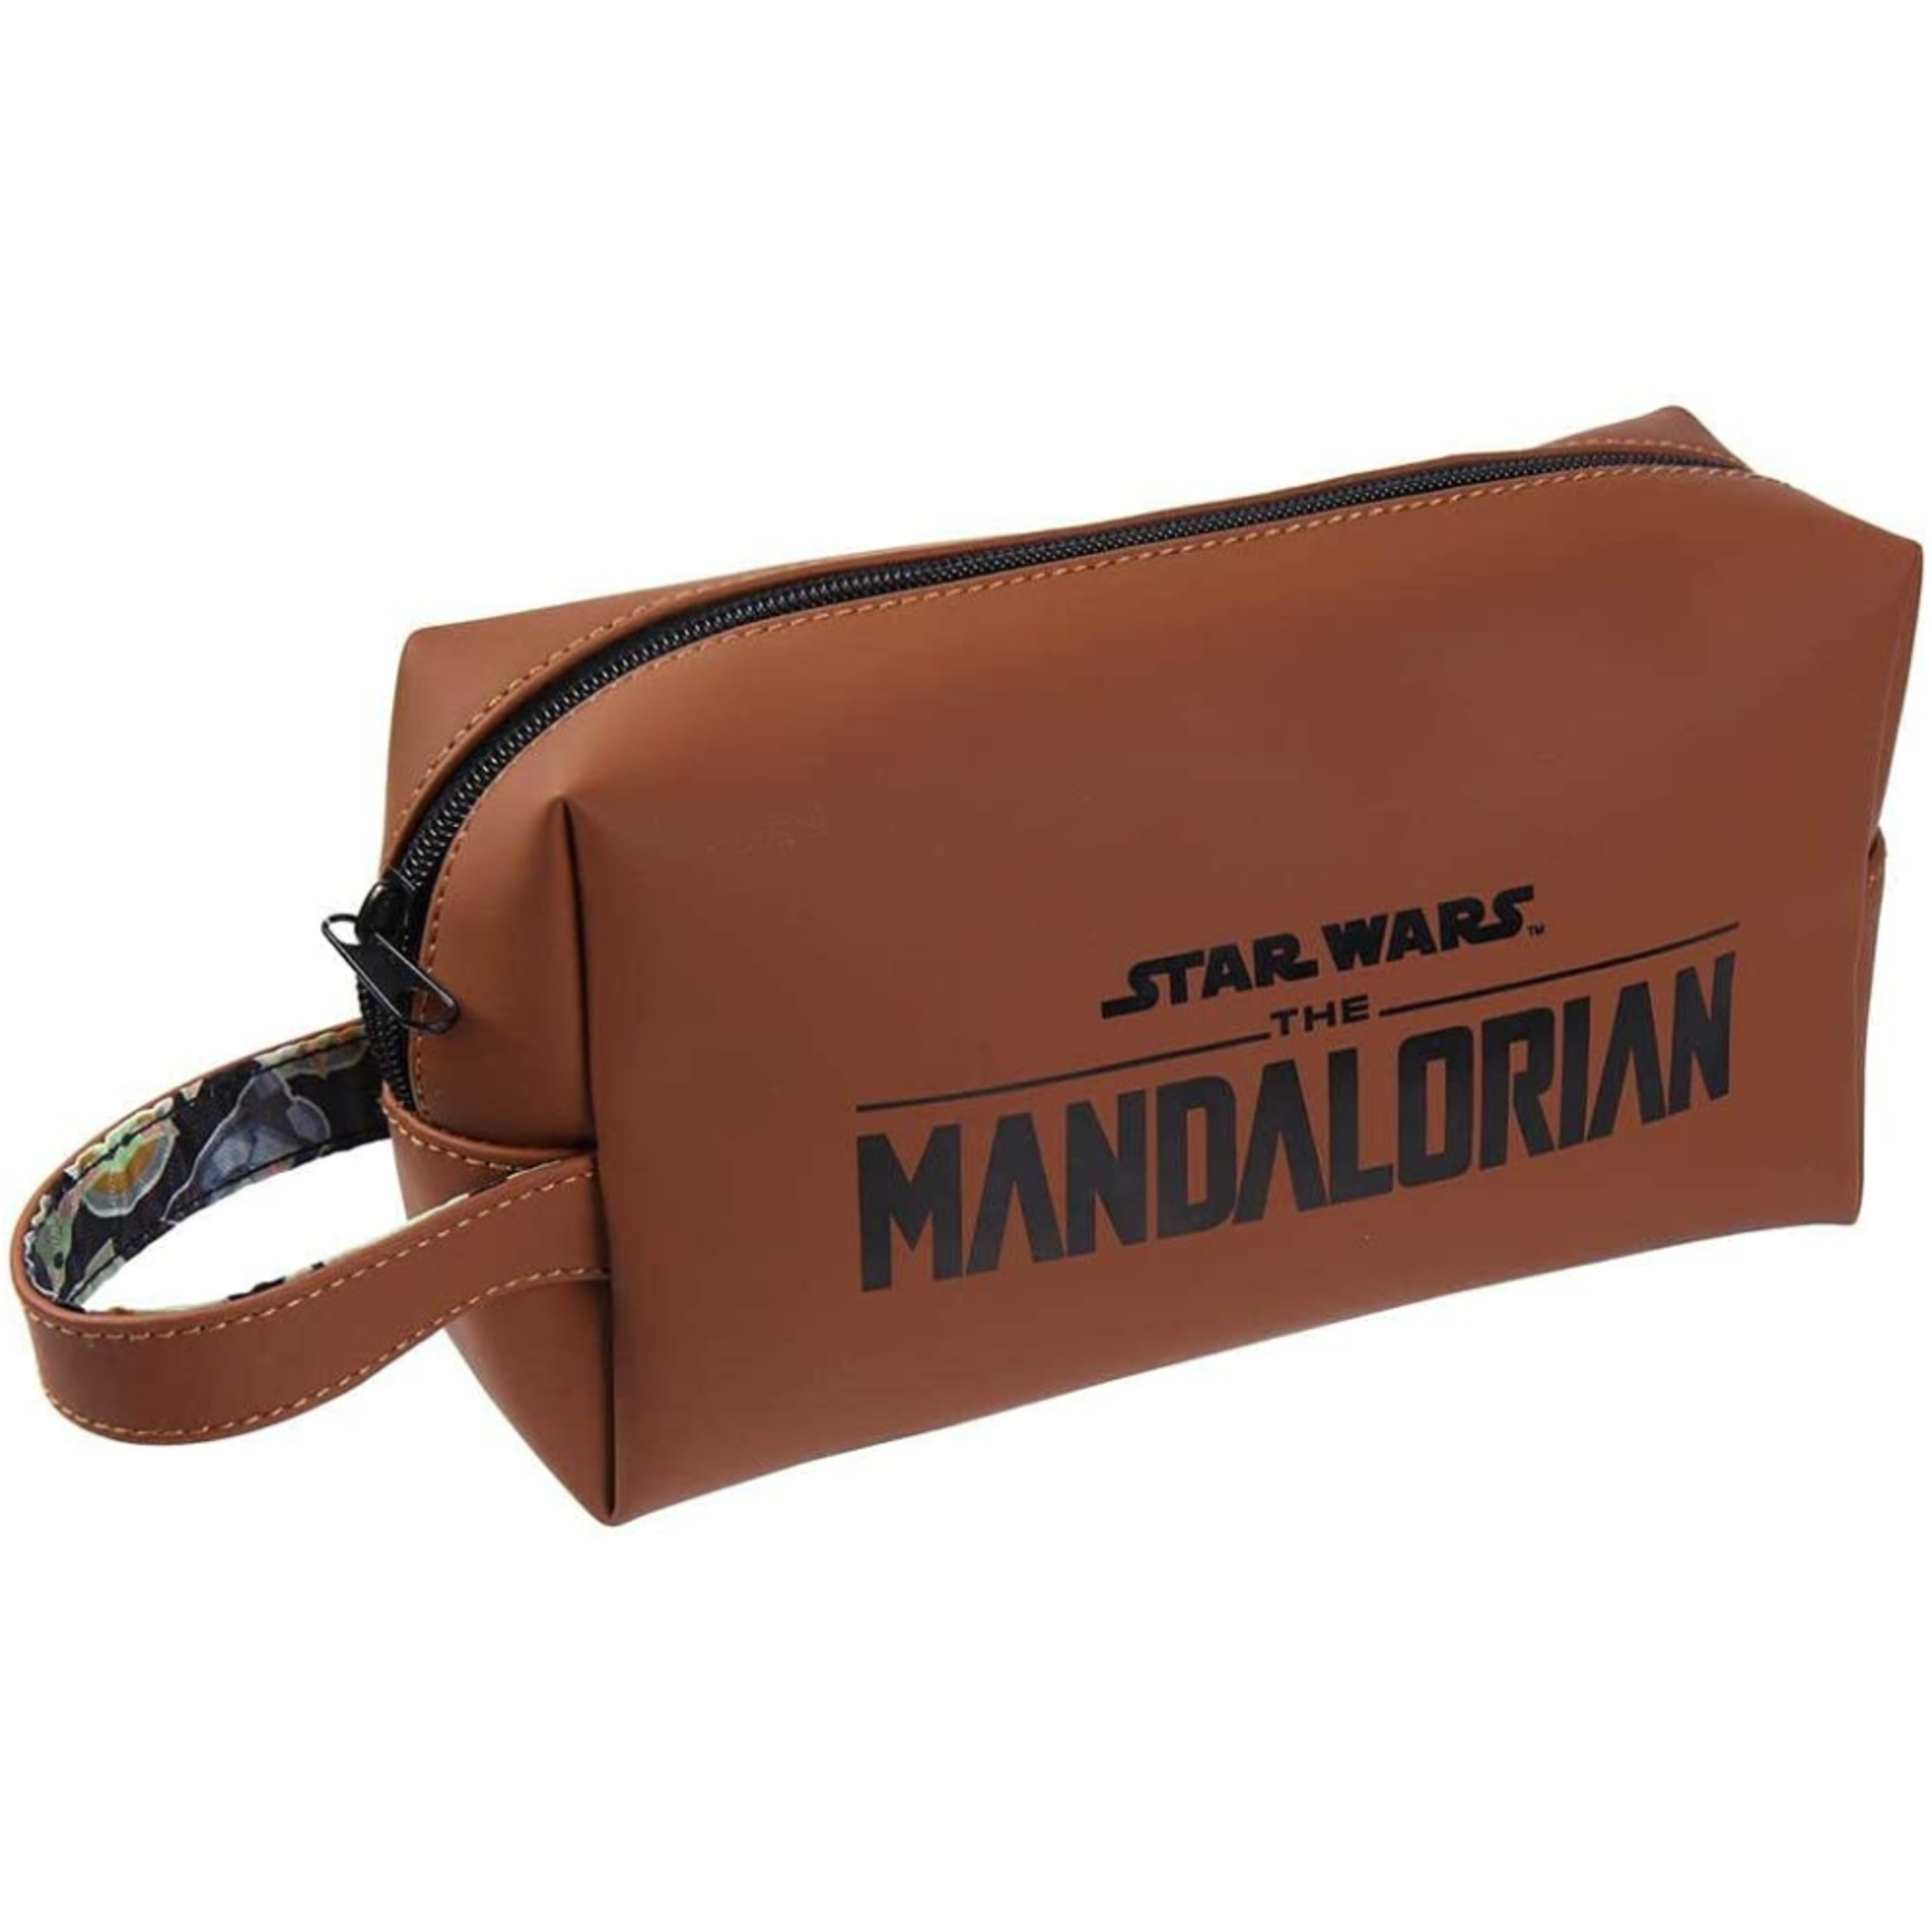 Nécessaire Star Wars The Mandalorian - marron - 